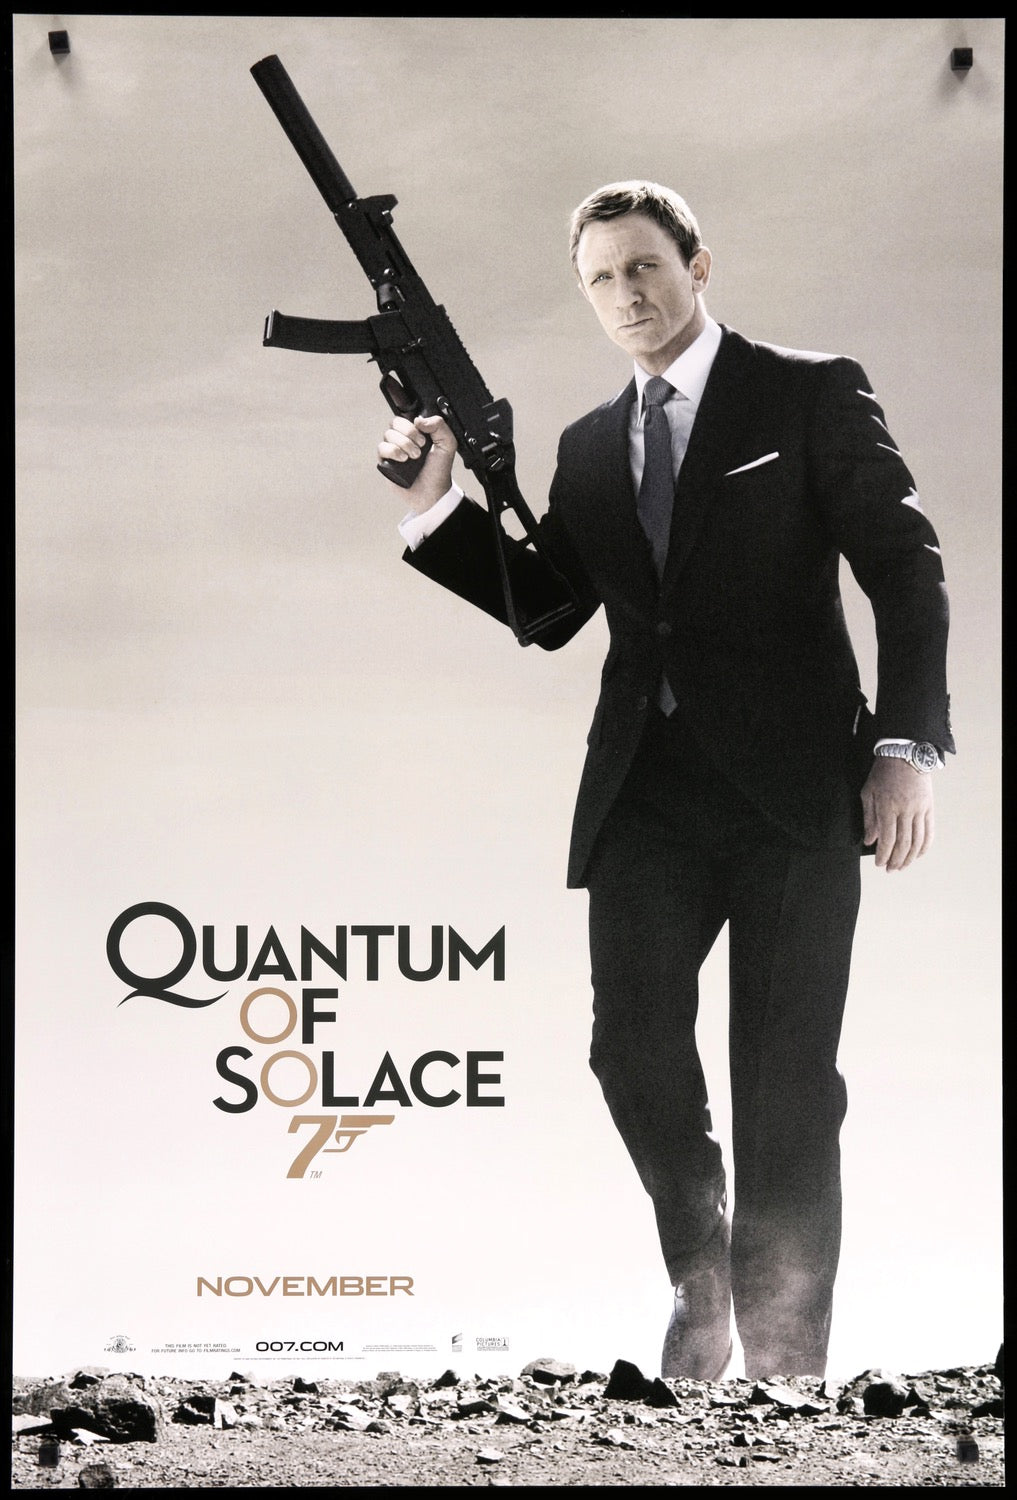 Quantum of Solace (2008) original movie poster for sale at Original Film Art